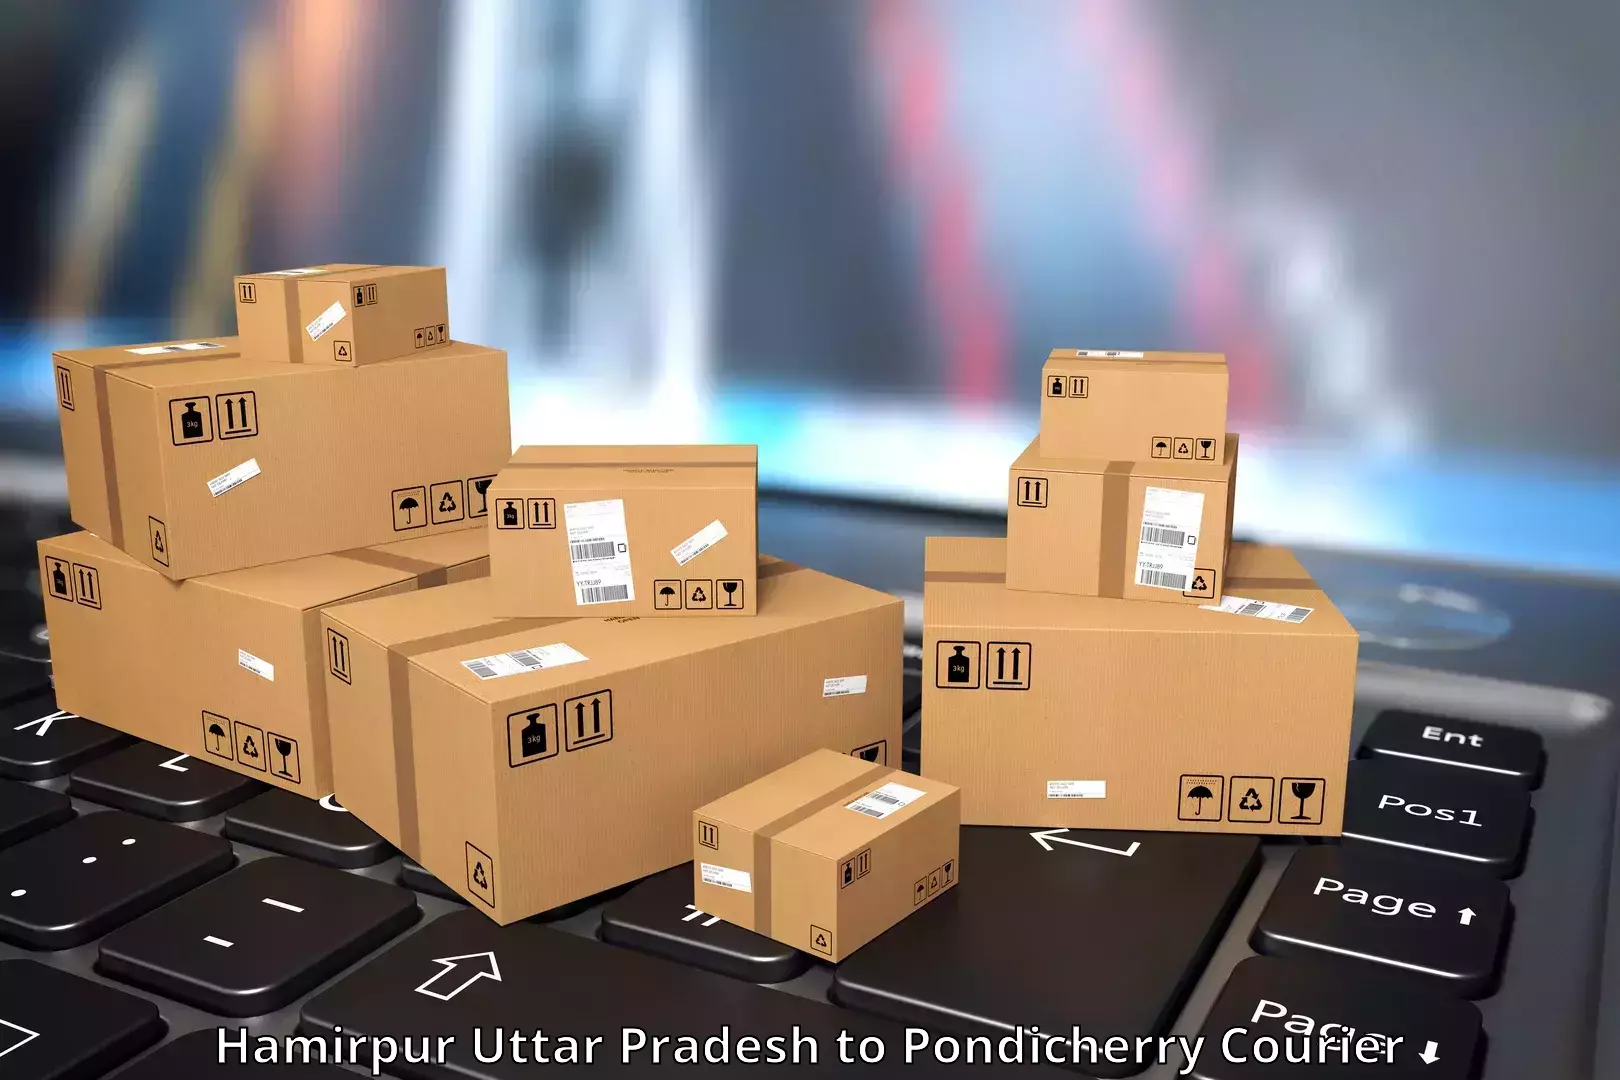 Advanced tracking systems Hamirpur Uttar Pradesh to Pondicherry University